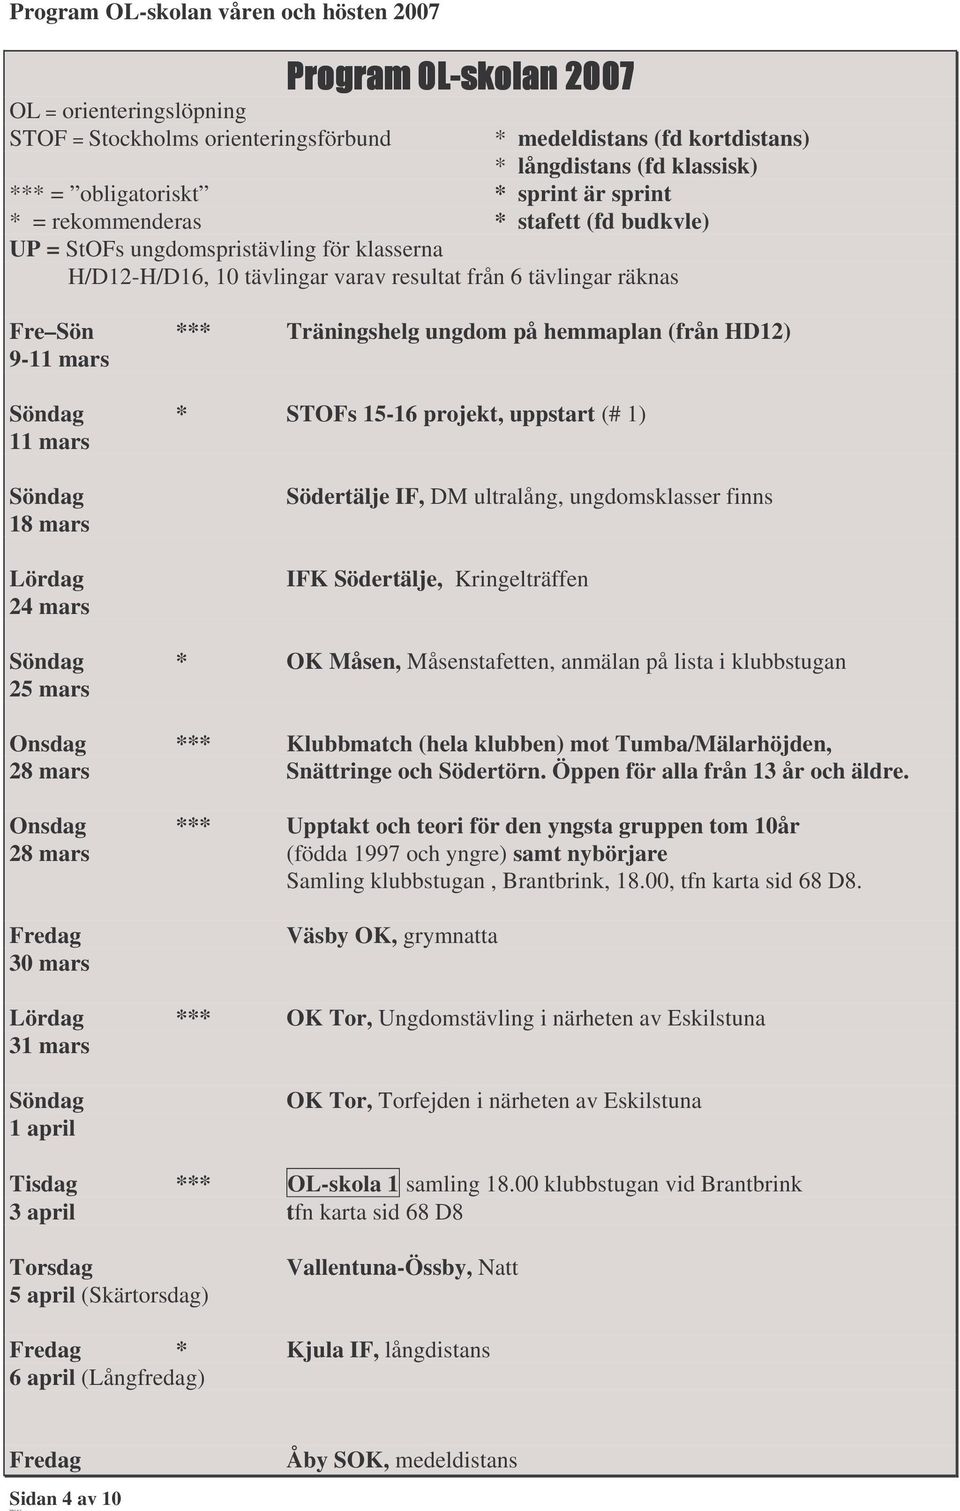 projekt, uppstart (# 1) 11 mars 18 mars 24 mars Södertälje IF, DM ultralång, ungdomsklasser finns IFK Södertälje, Kringelträffen * OK Måsen, Måsenstafetten, anmälan på lista i klubbstugan 25 mars